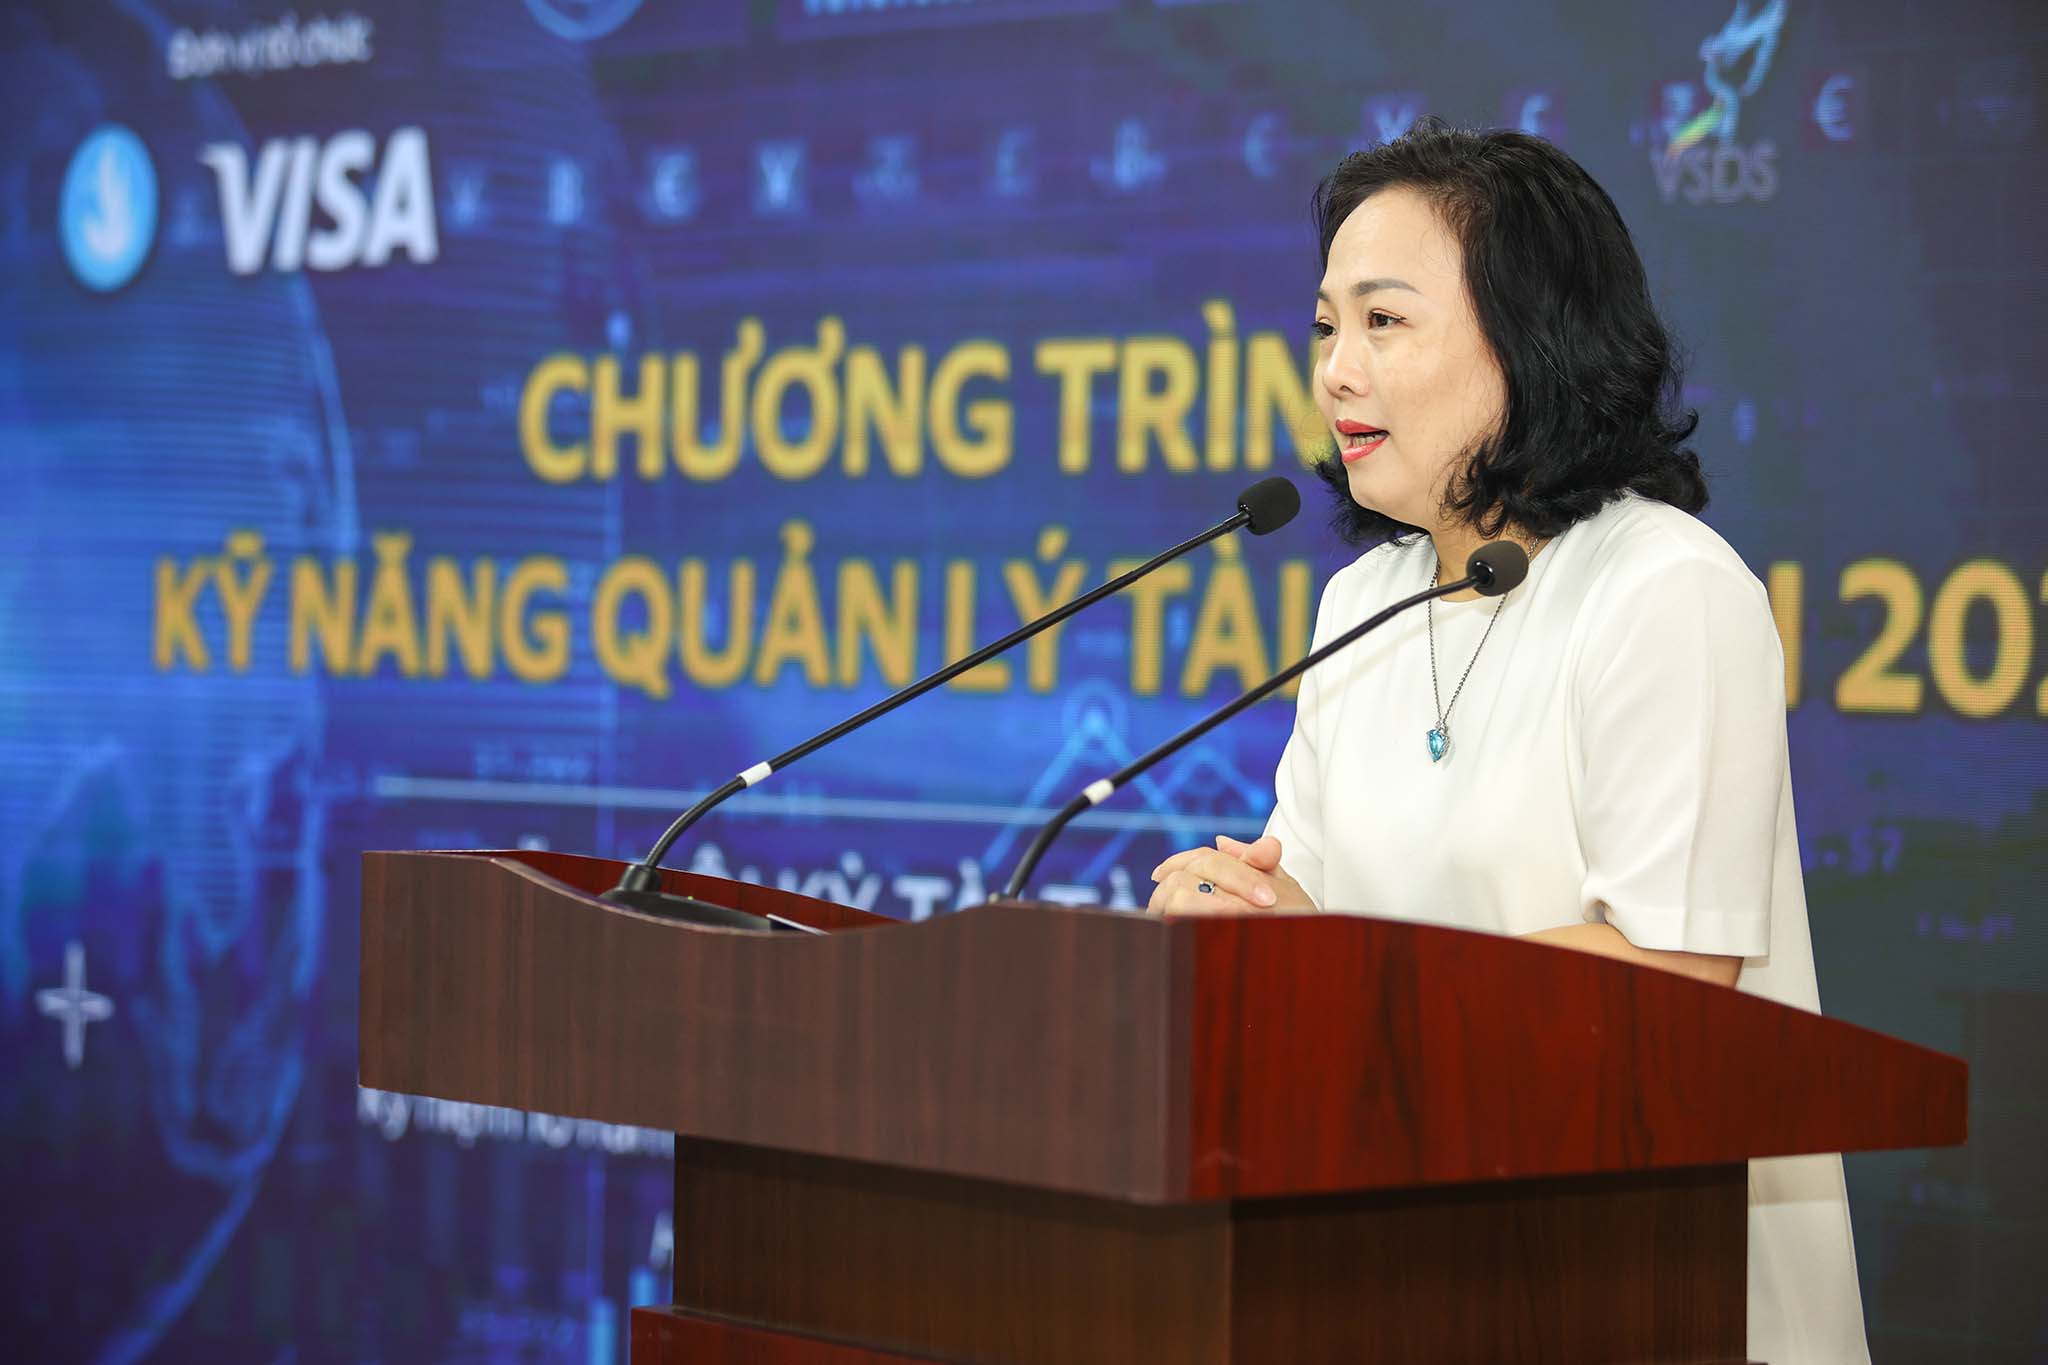 Trung ương Hội Sinh viên Việt Nam và Visa chào mừng Chương trình Kỹ năng Quản lý Tài chính lần thứ 10